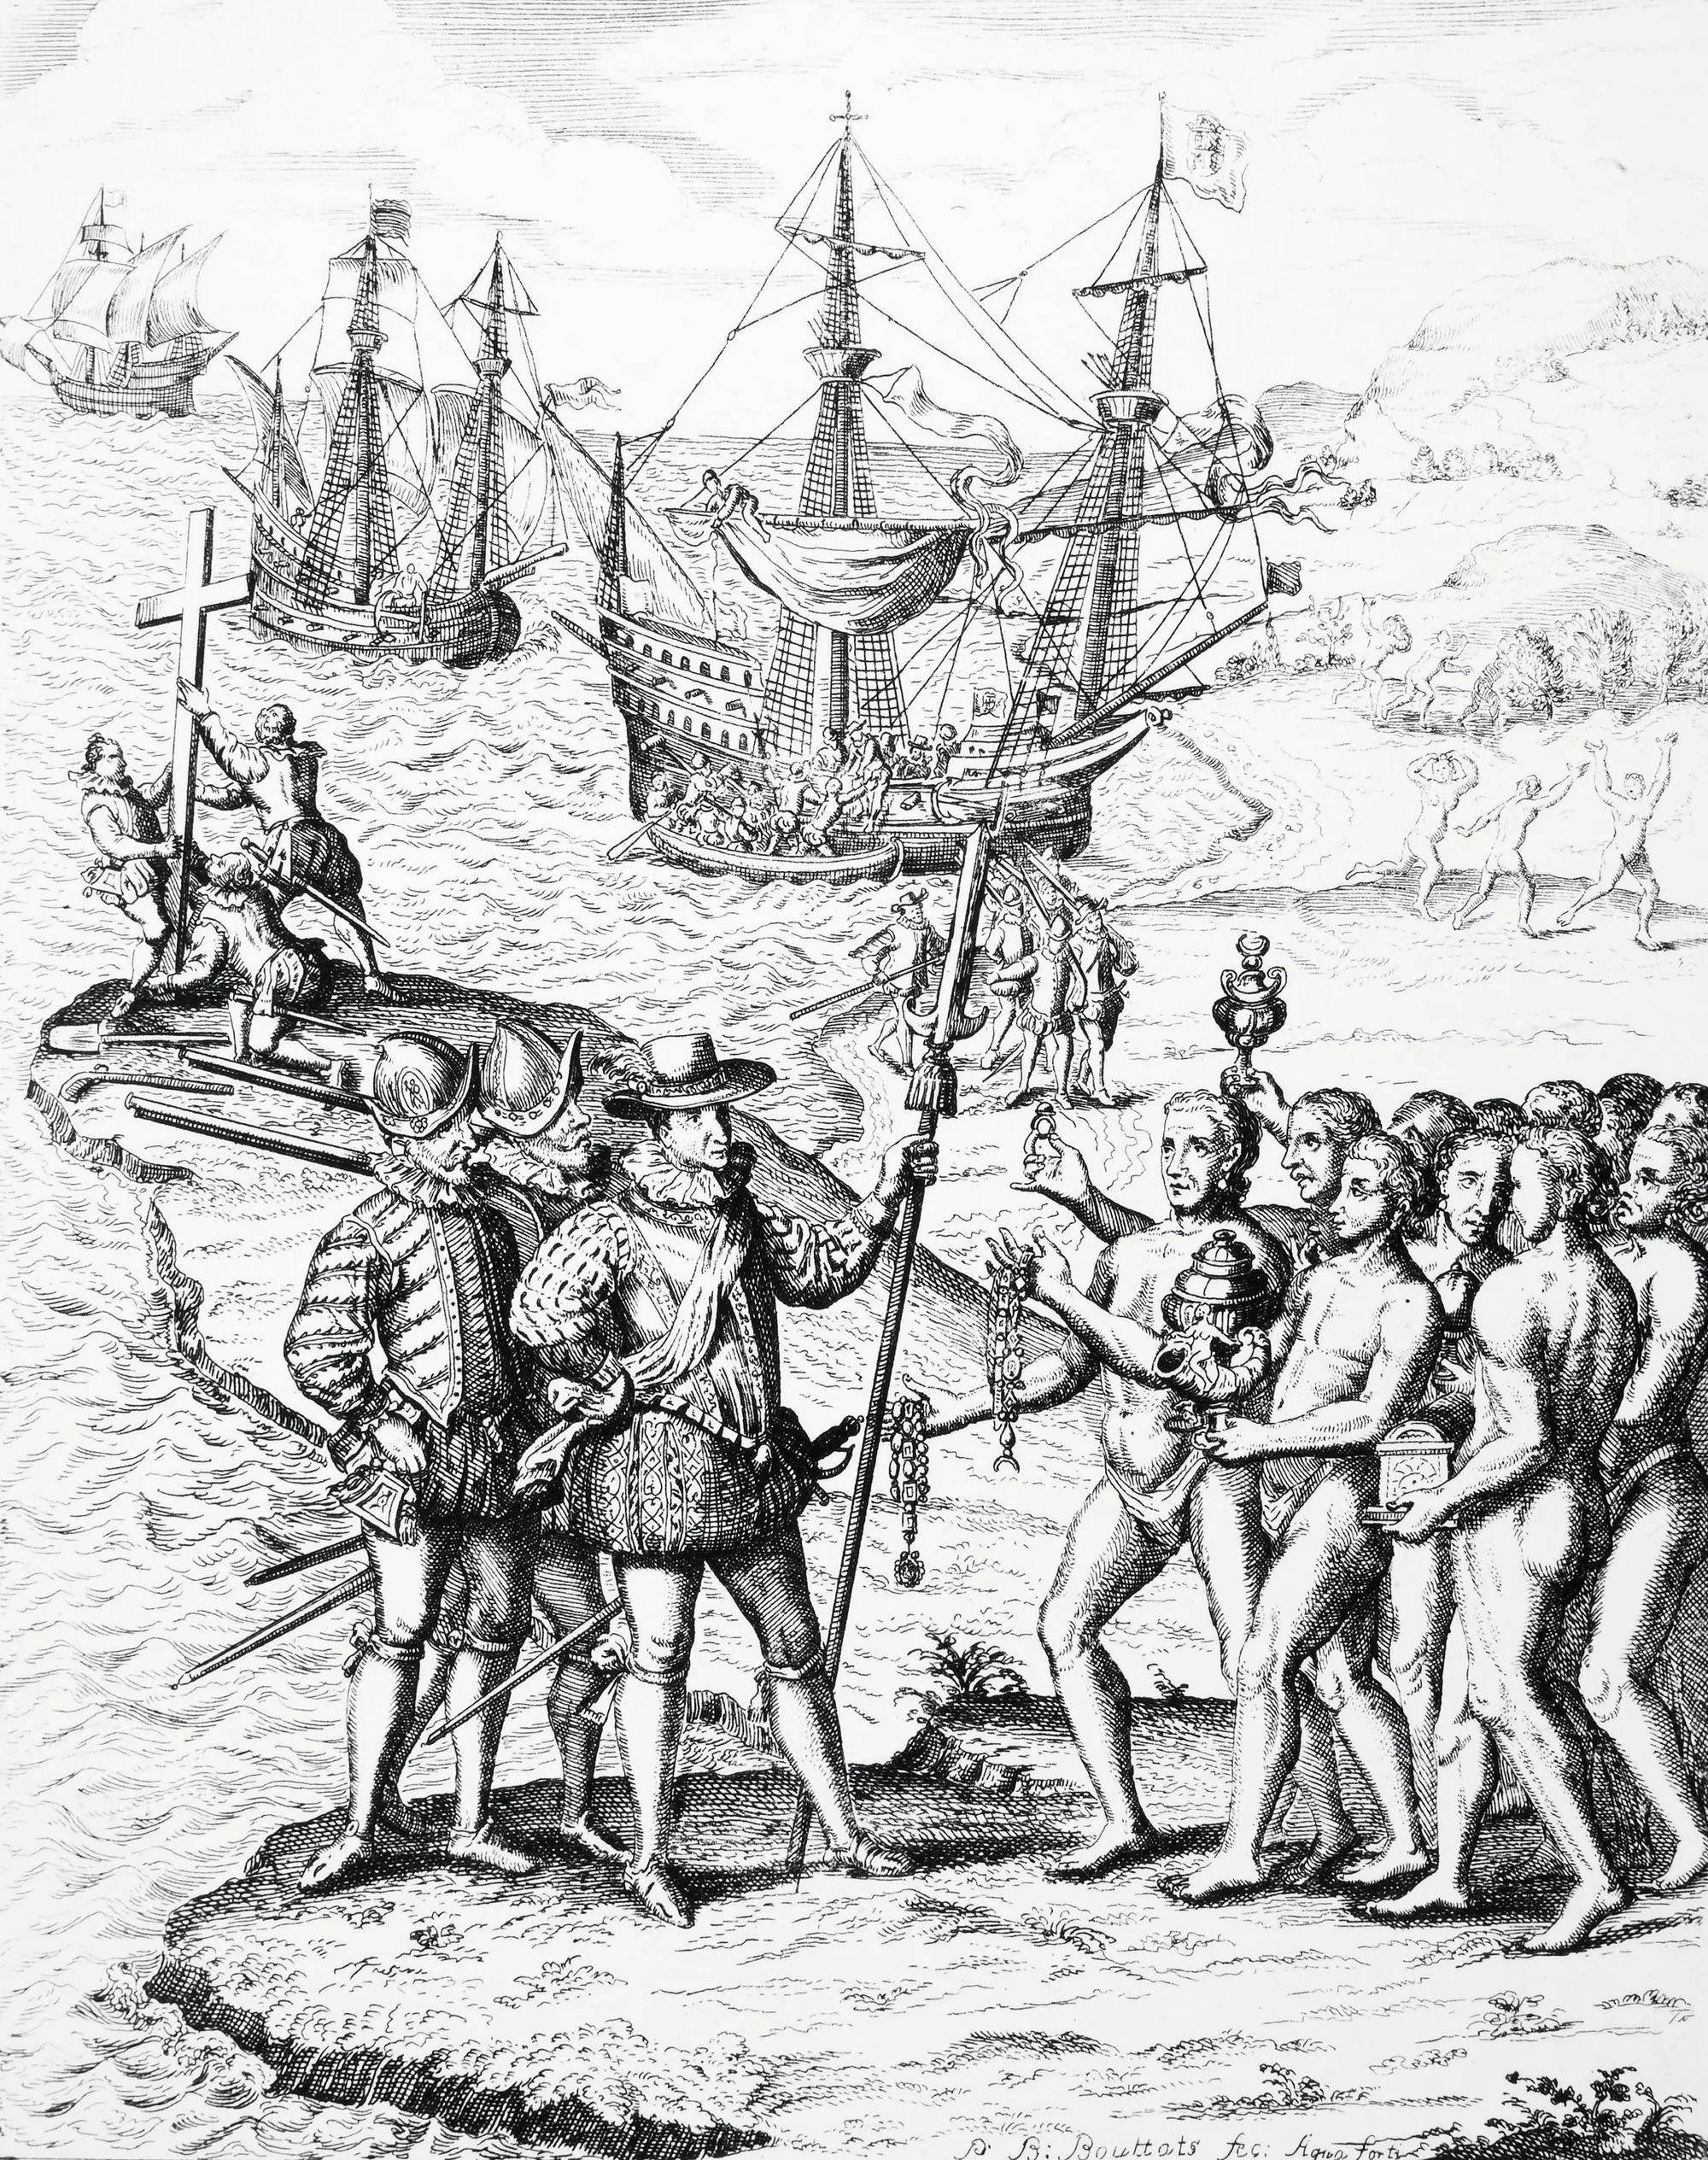 Colón desembarcando en la isla de La Hispaniola, y respondes a esta persona. 1492, grabado español, 1728.